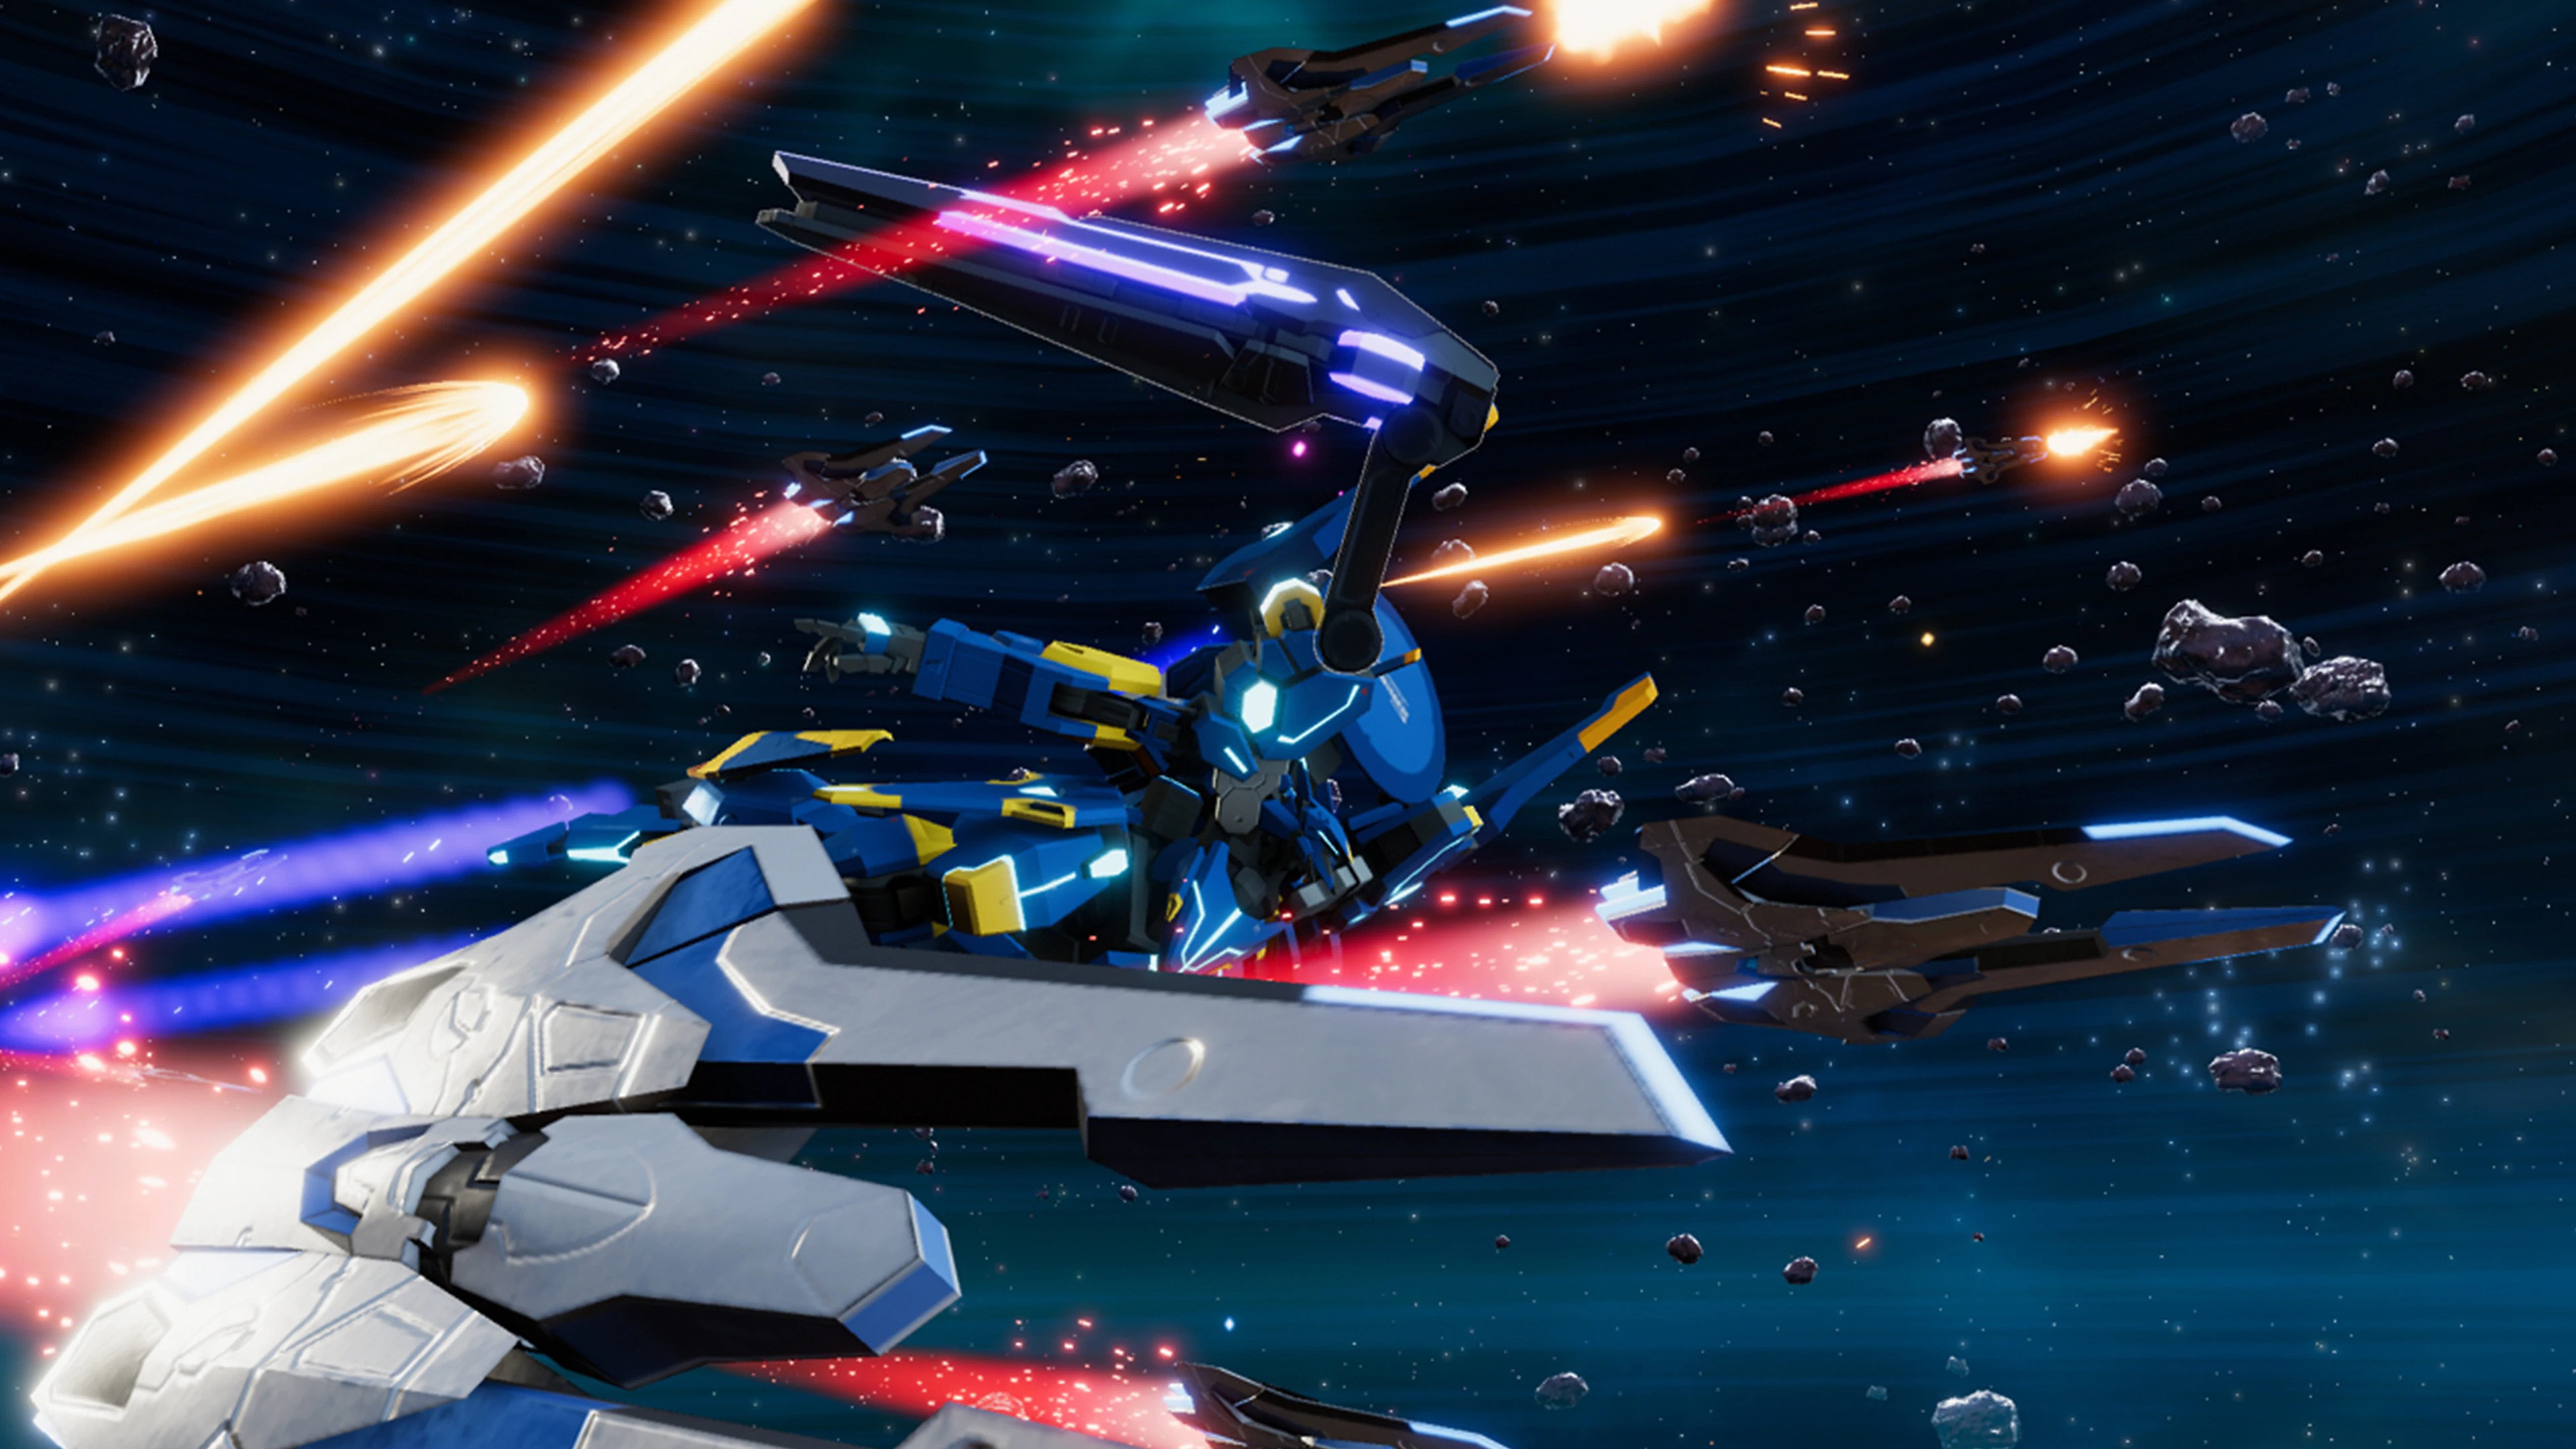 Ein Screenshot aus Relayer, der einen Mech-Anzug zeigt, wie er neben mehreren Raumschiffen durch den Weltraum fliegt